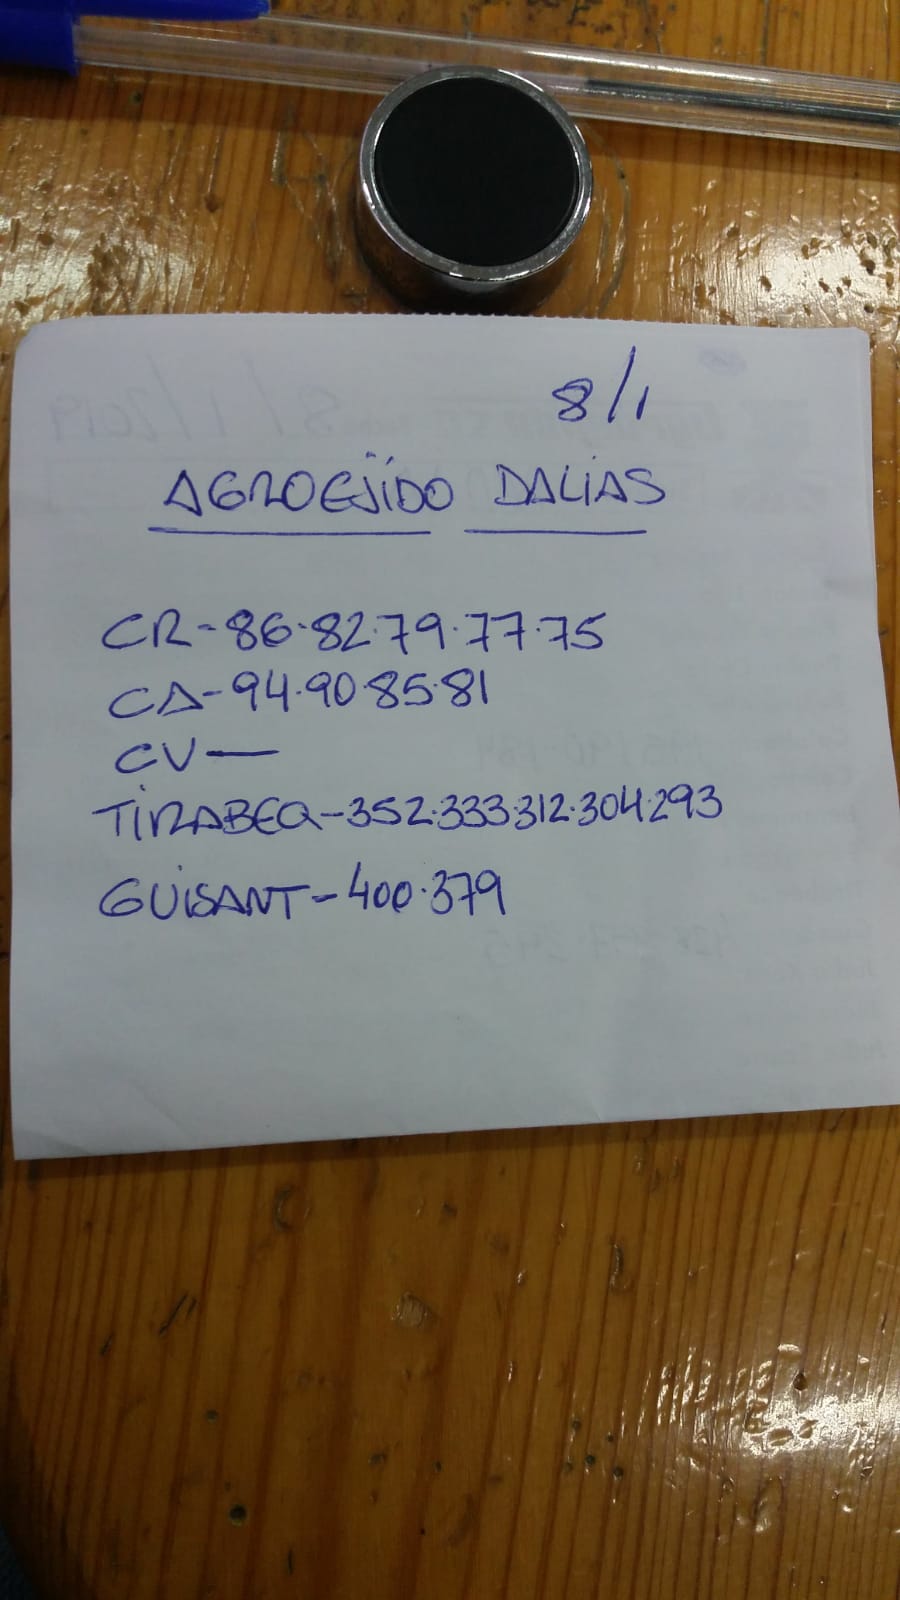 Subasta hortofrutícola AgroEjido Dalias 8 de Enero 2019